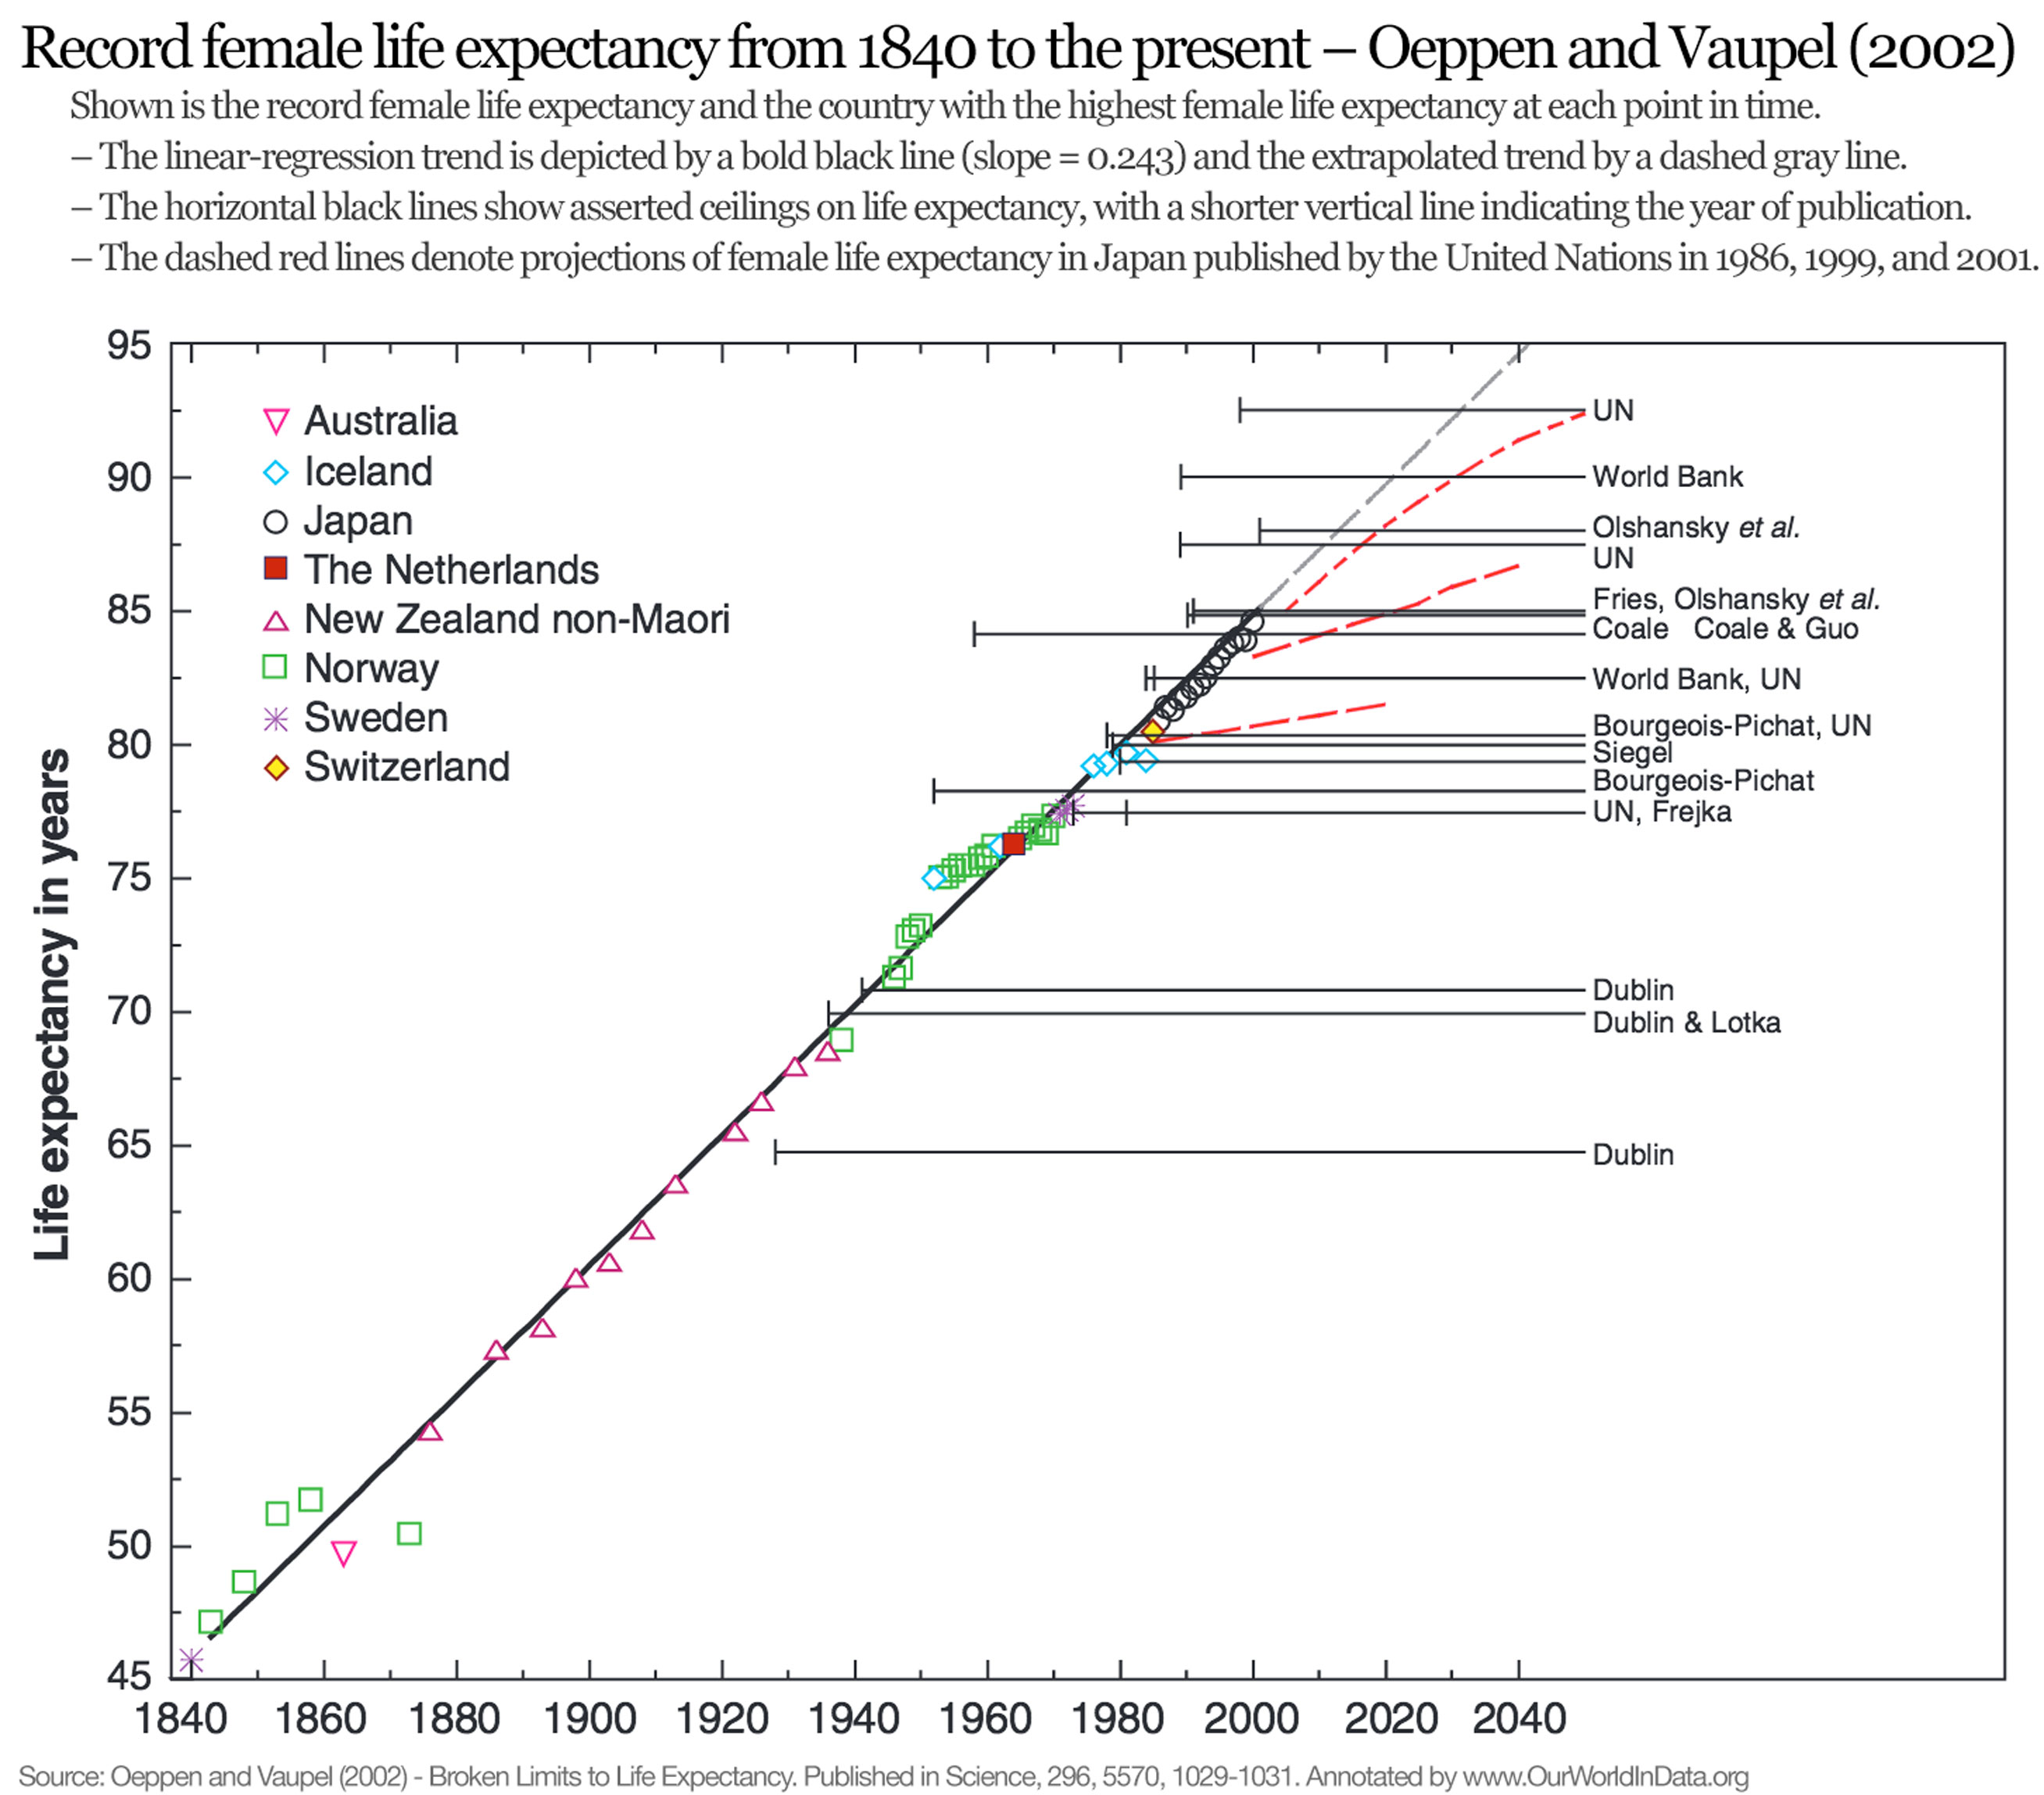 ourworldindata_record-female-life-expectancy.jpg